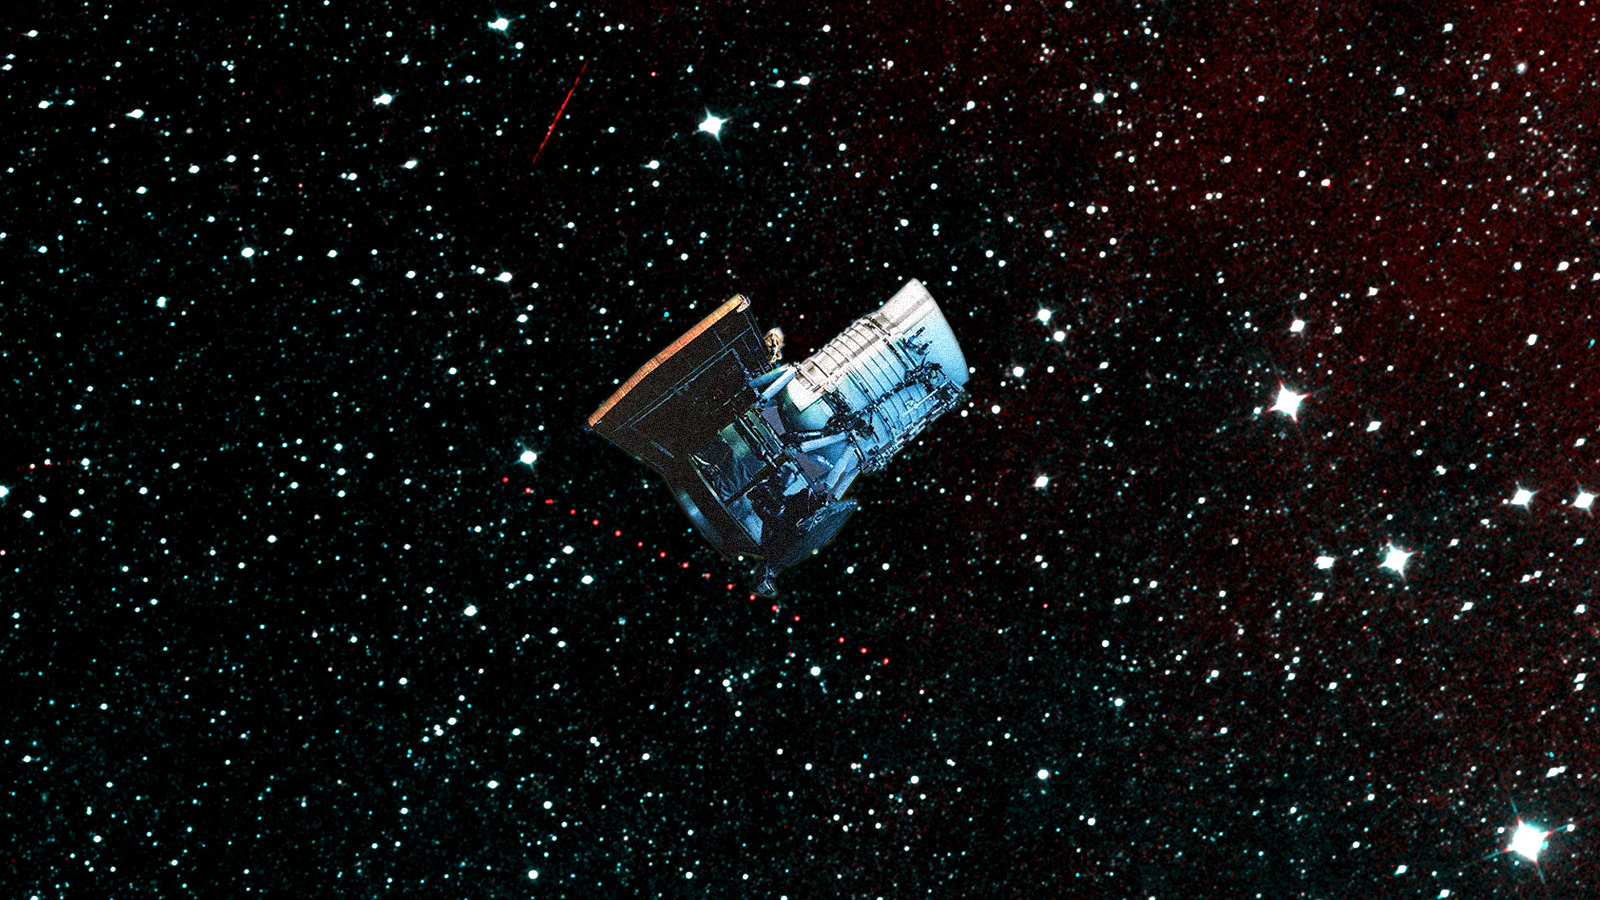 Die Sonne wird das Weltraumteleskop NEOWISE der NASA in der Atmosphäre verglühen lassen